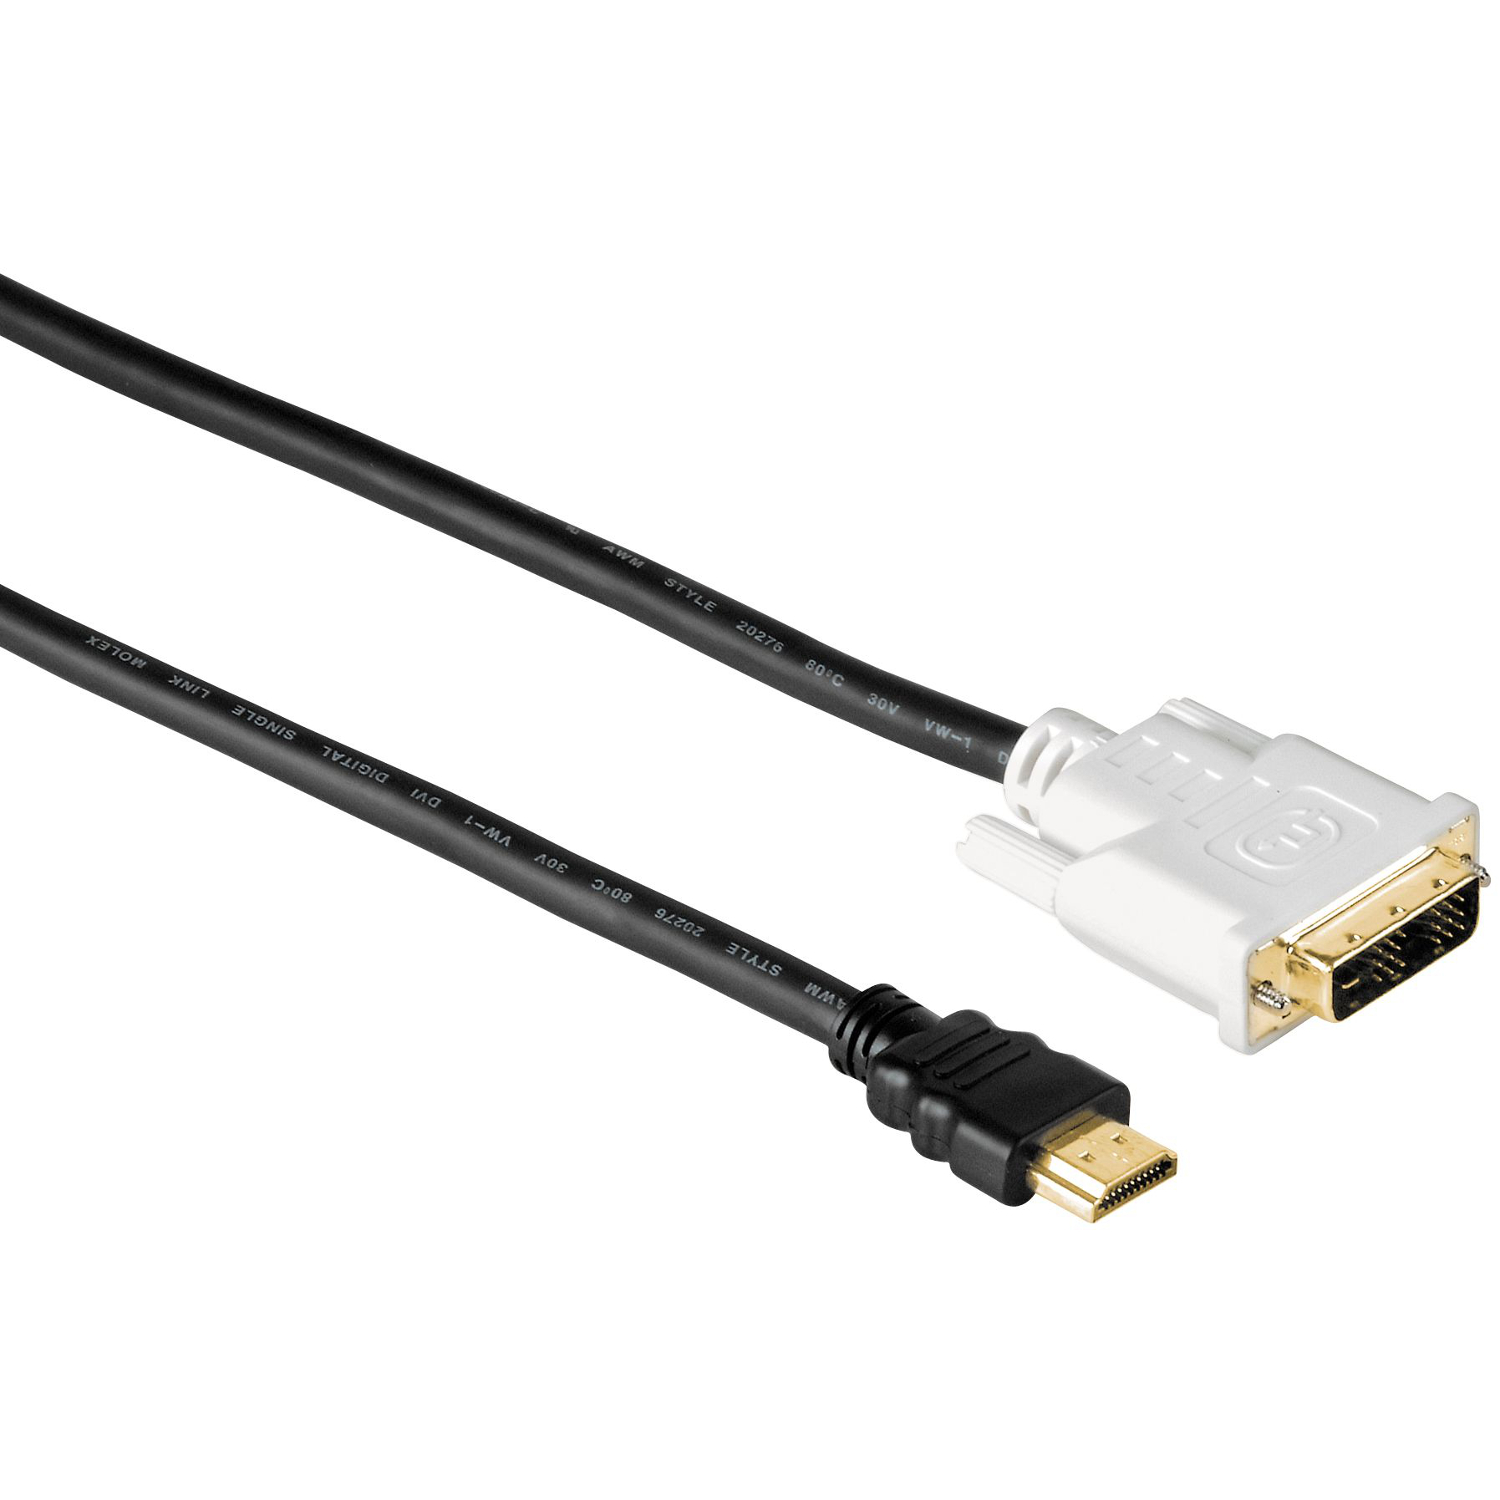  Cablu Video Hama 34033, HDMI-DVI/D, 2 m 